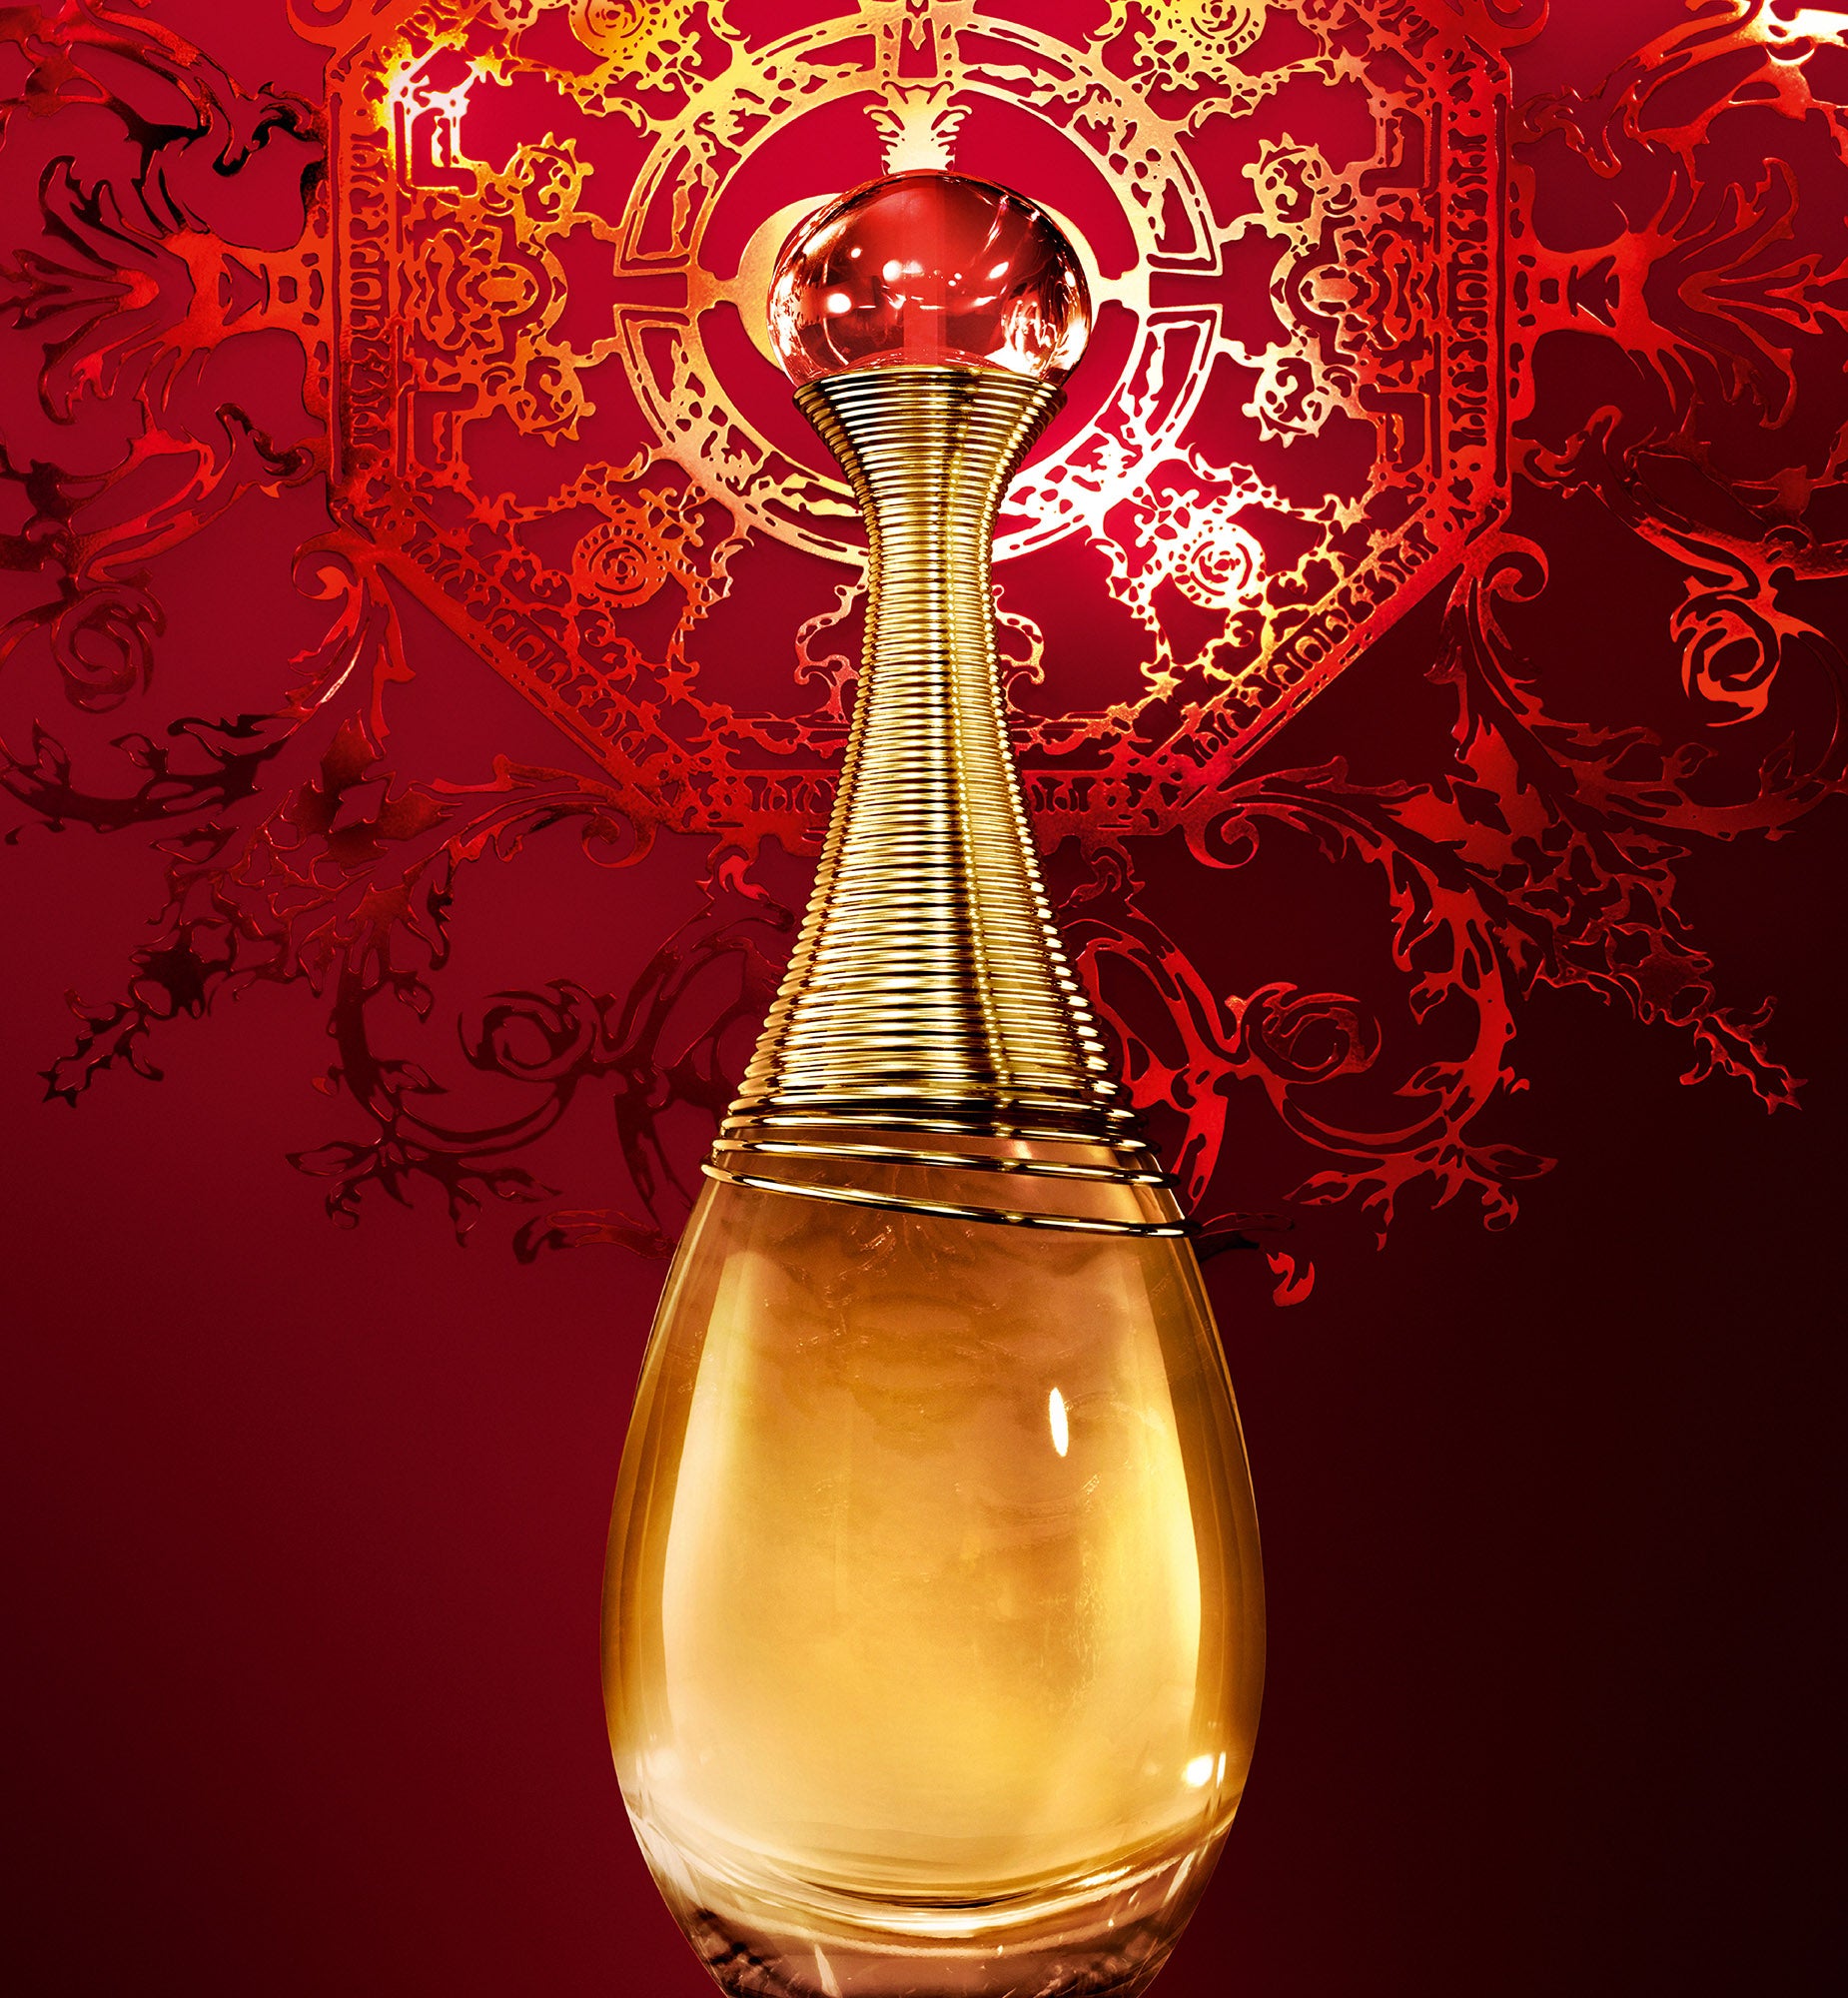 น้ำหอม J’ADORE EAU DE PARFUM—Eau de parfum—น้ำหอมจาดอร์ ที่รวบรวมกลิ่นดอกไม้ที่สวยที่สุดจากทั่วทุกมุมโลก